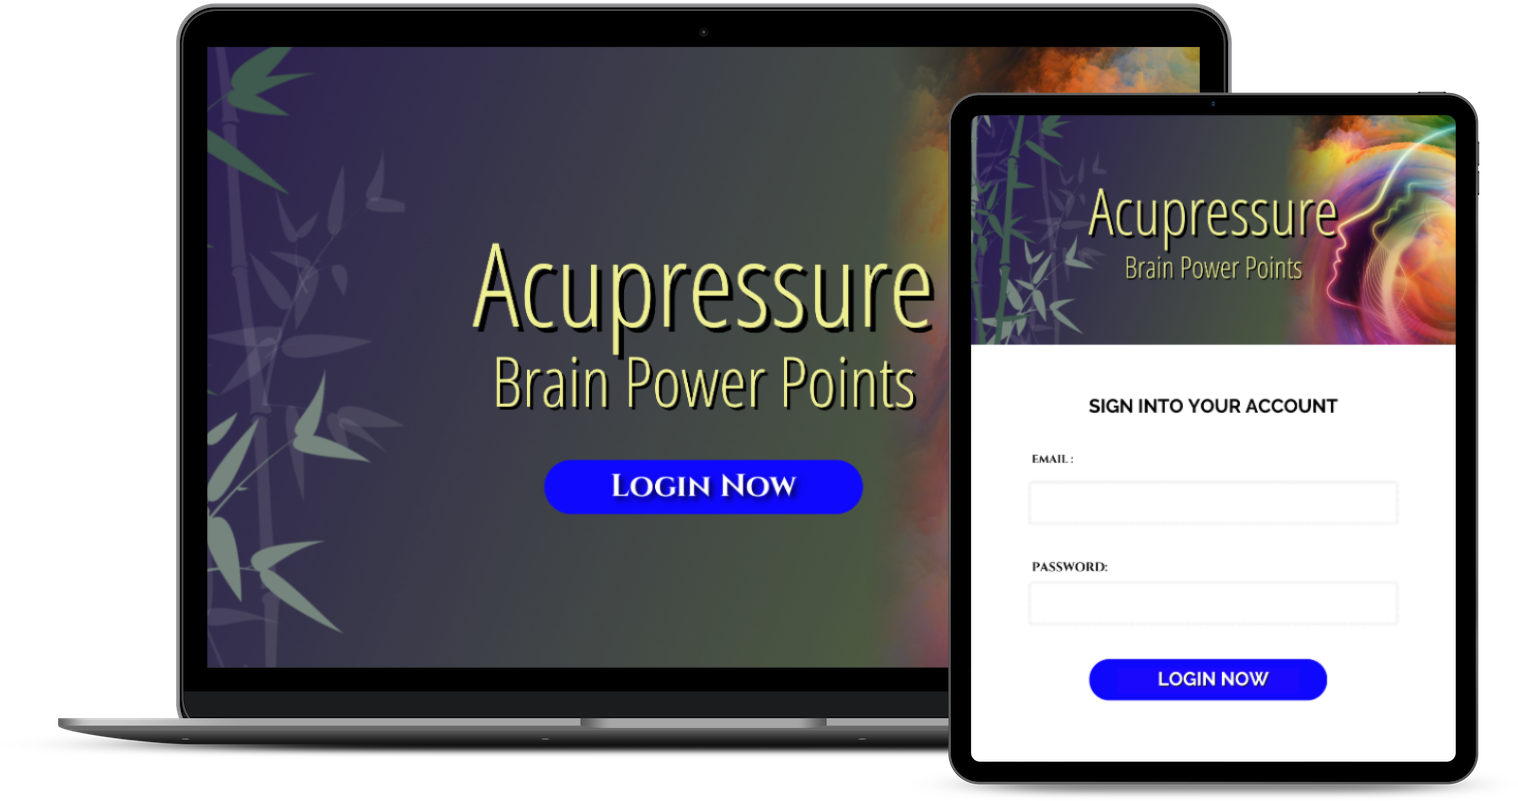 Acupressure Brain Power Points- Online Course